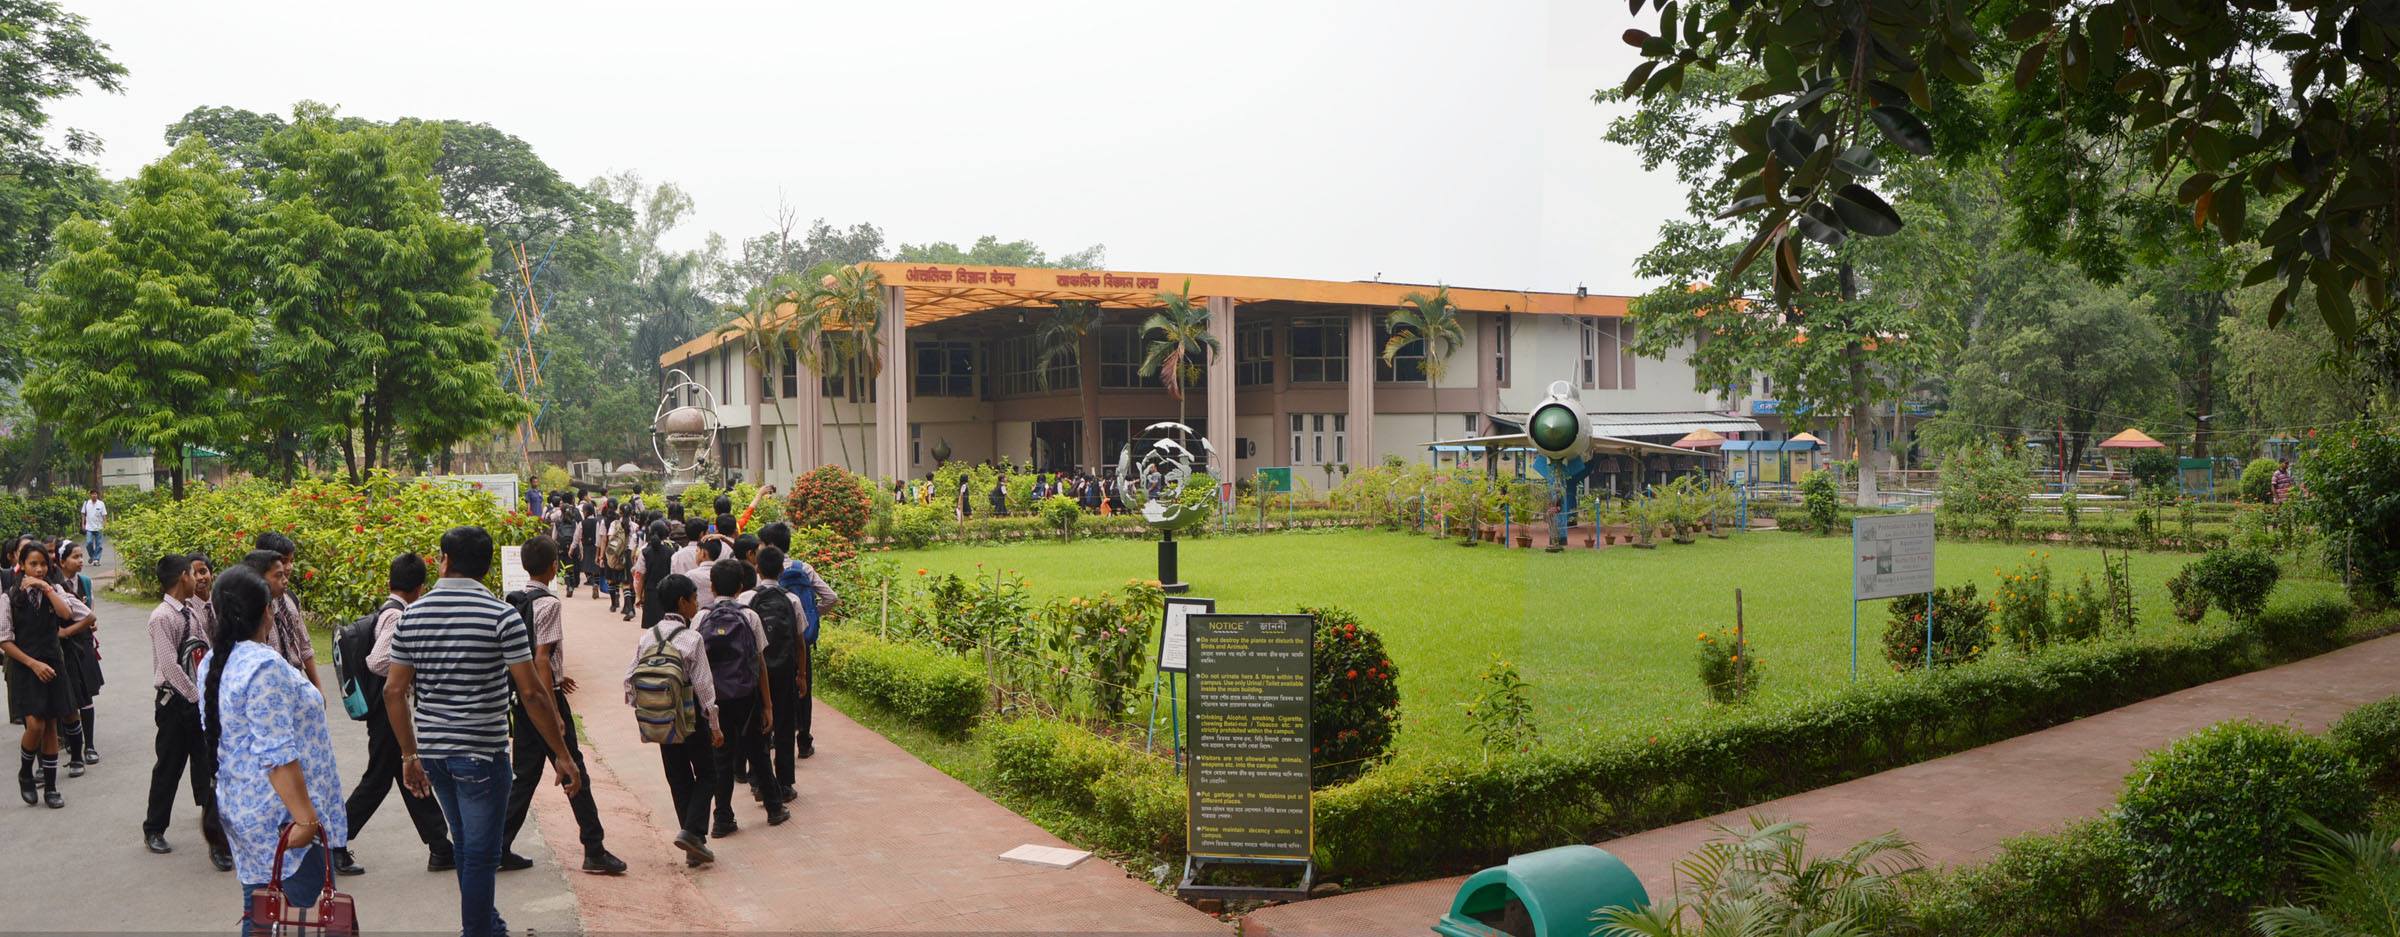 Regional Science Center